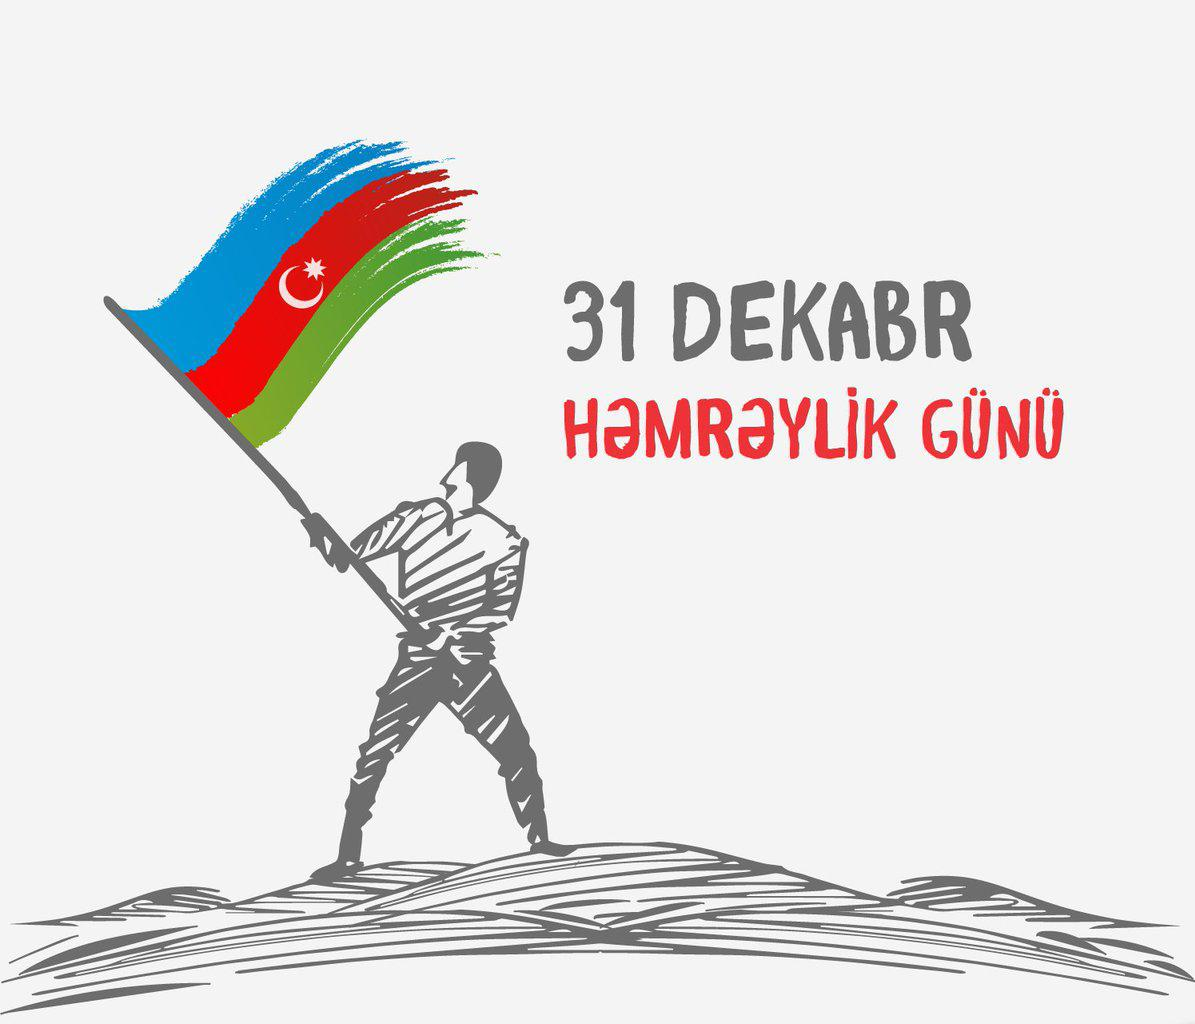 Dünya Azərbaycanlılarının Həmrəylik Günü